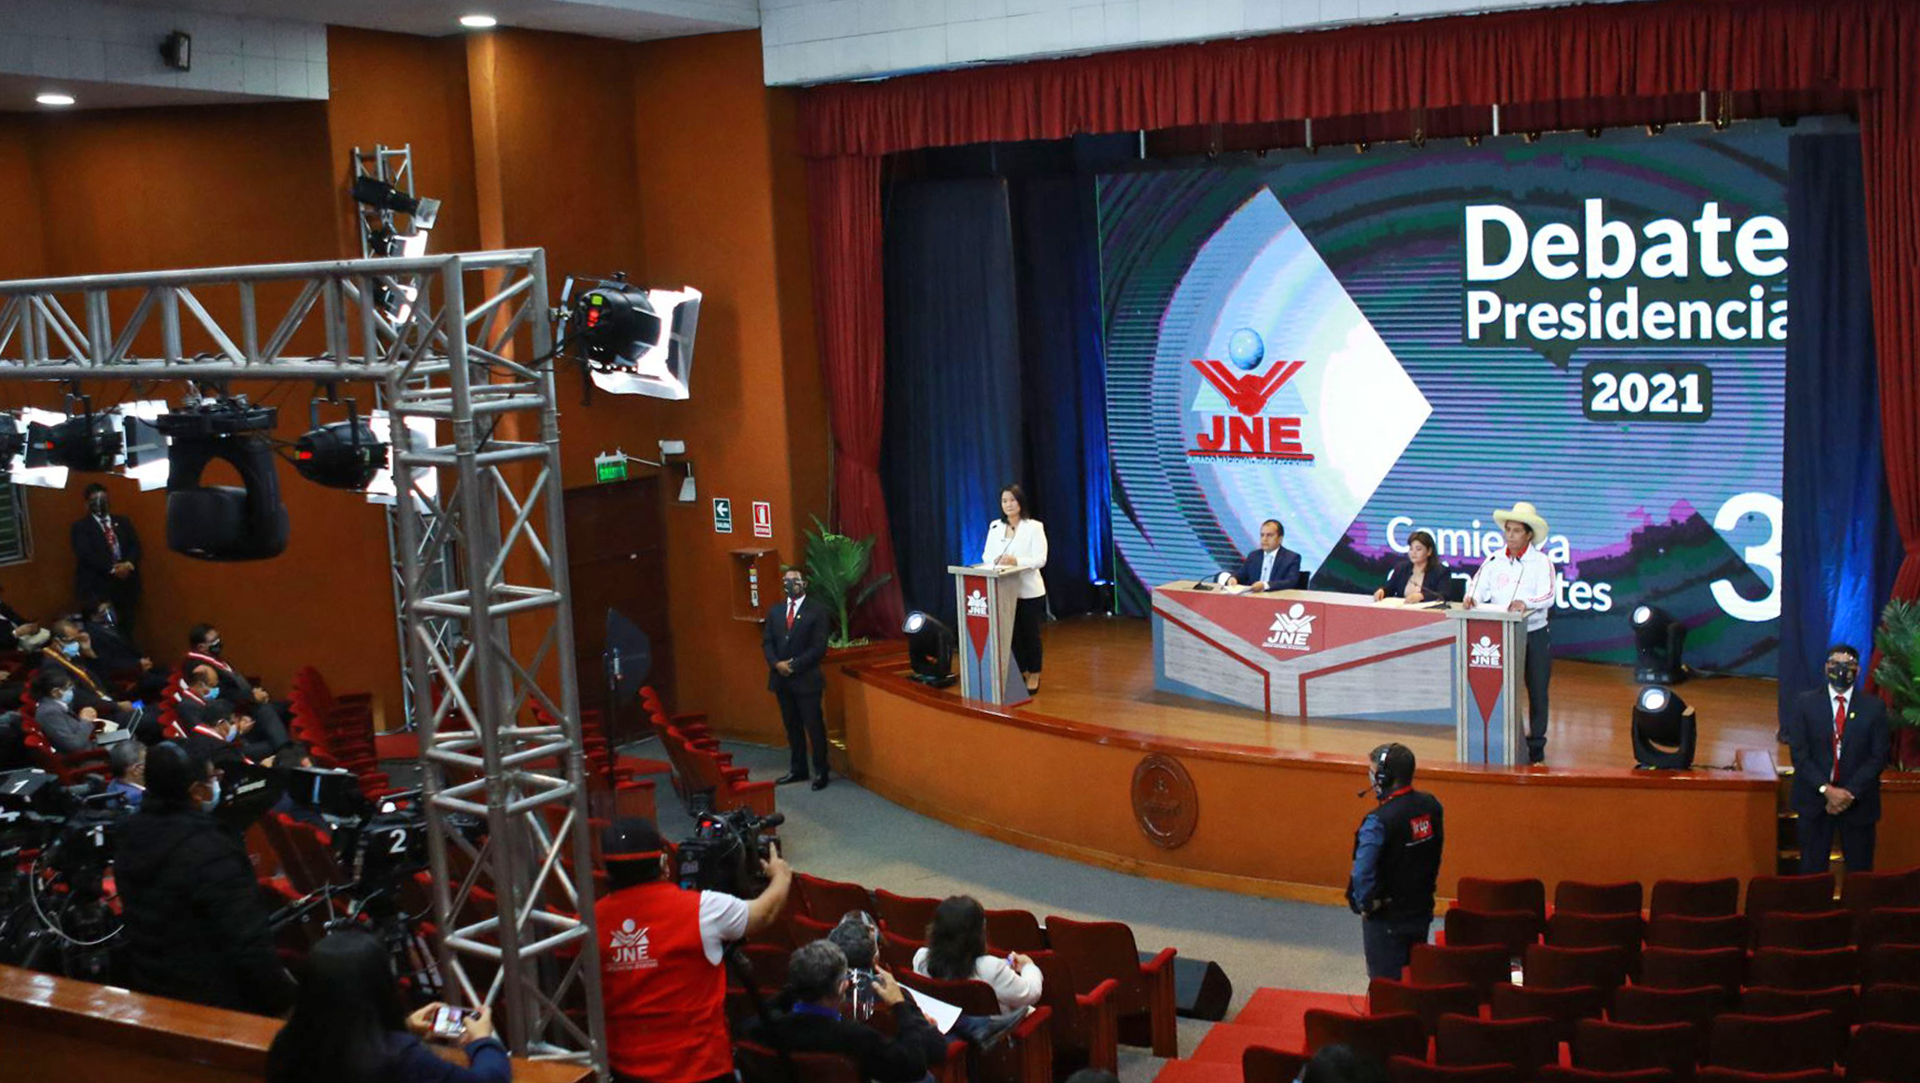 Imagen del debate presidencial del JNE. en el escenario del auditorio están los candidatos Keiko Fujimori y Pedro Castillo